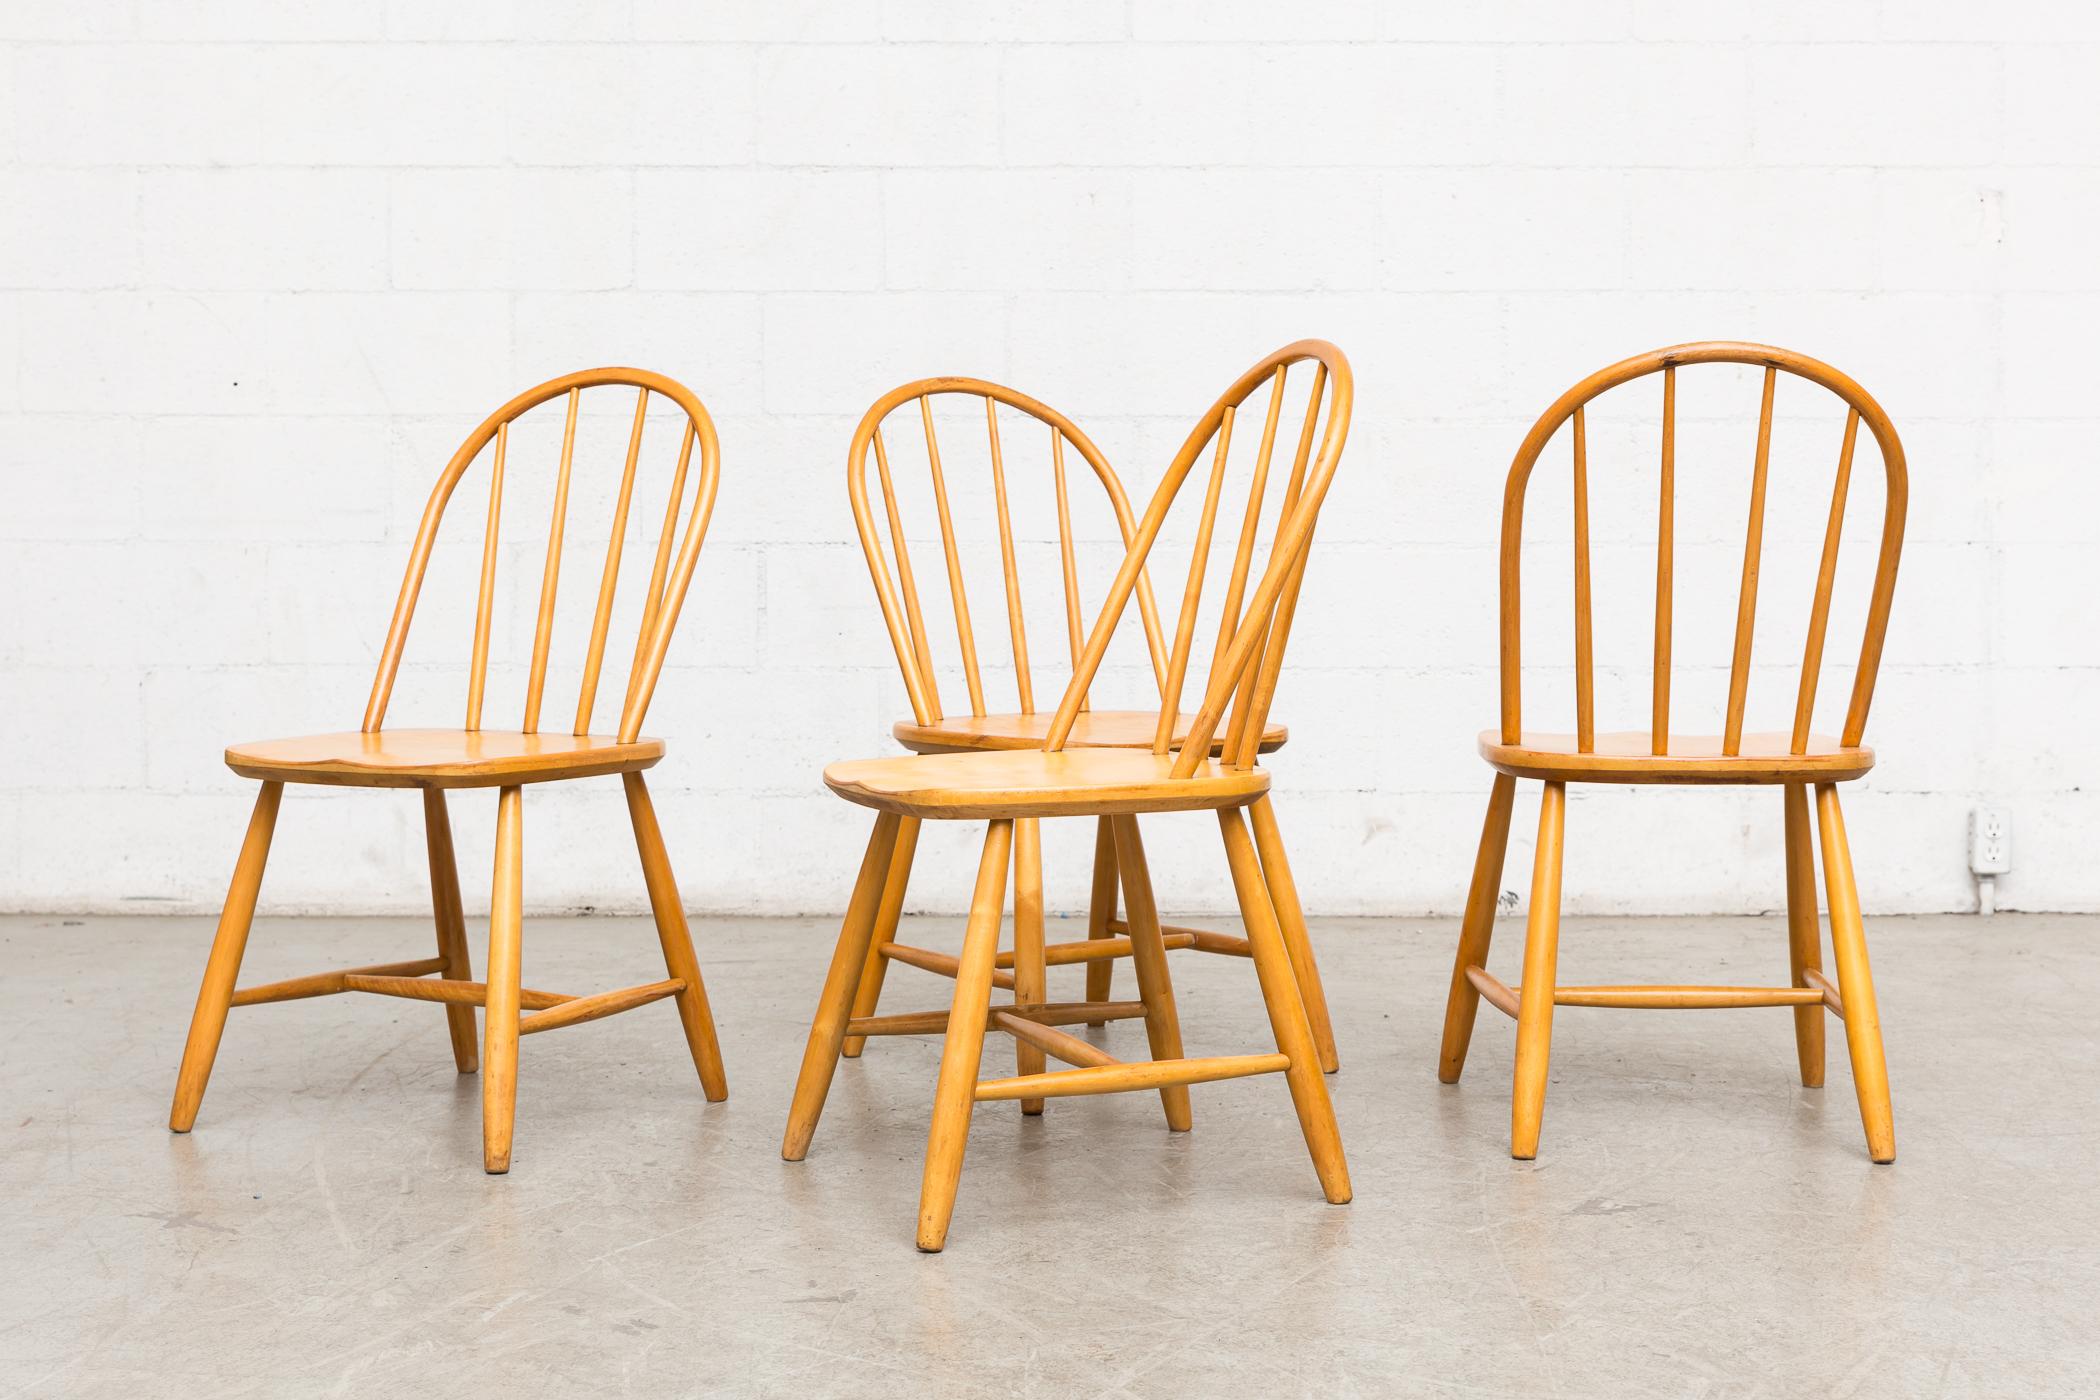 Satz von 4 Tapiovaara inspiriert natürliche Spindel zurück Stühle. leicht nachgearbeitet, leicht niedrige Sitzhöhe, sonst in gutem natürlichen Zustand. Preislich als Set. Weitere ähnliche Stühle verfügbar und separat aufgeführt